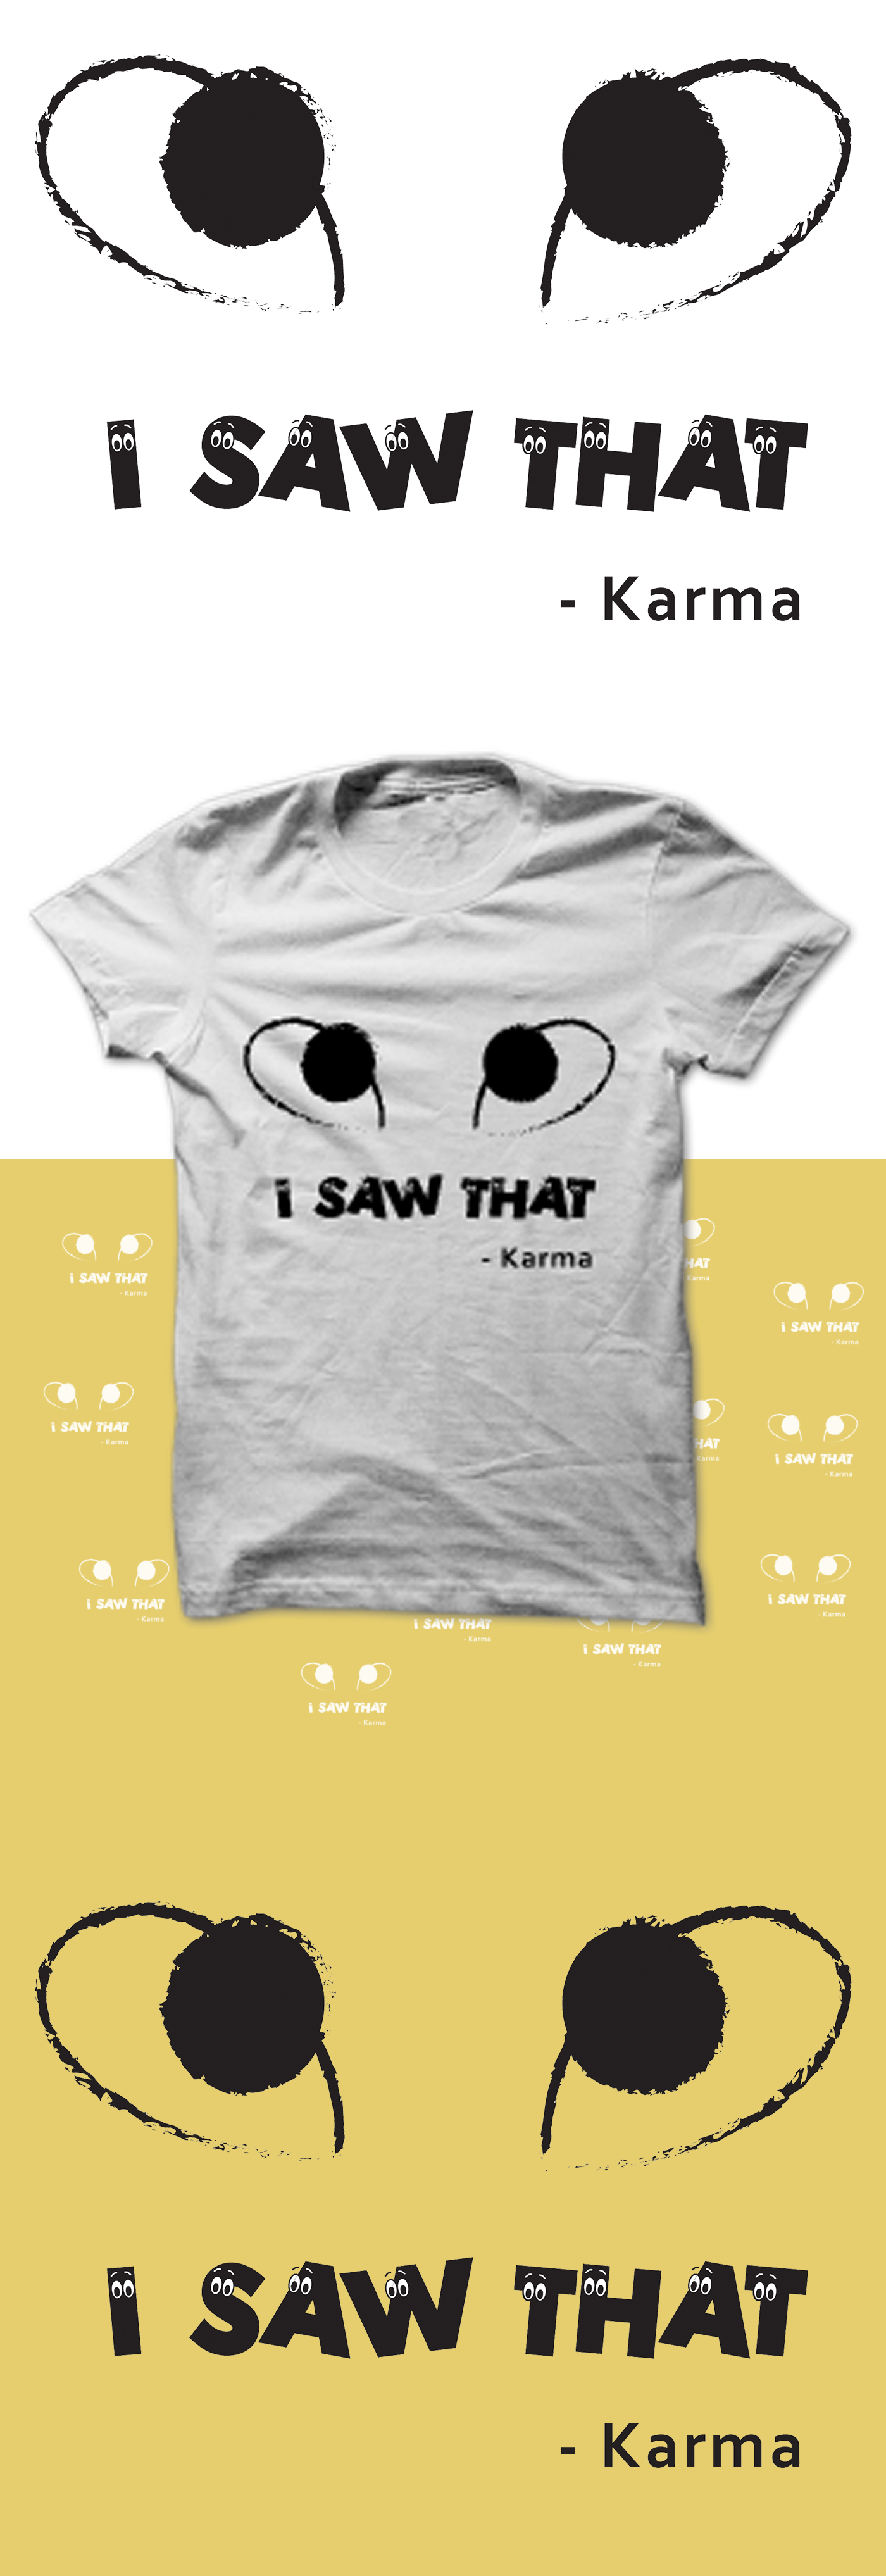 karma t-shirt design